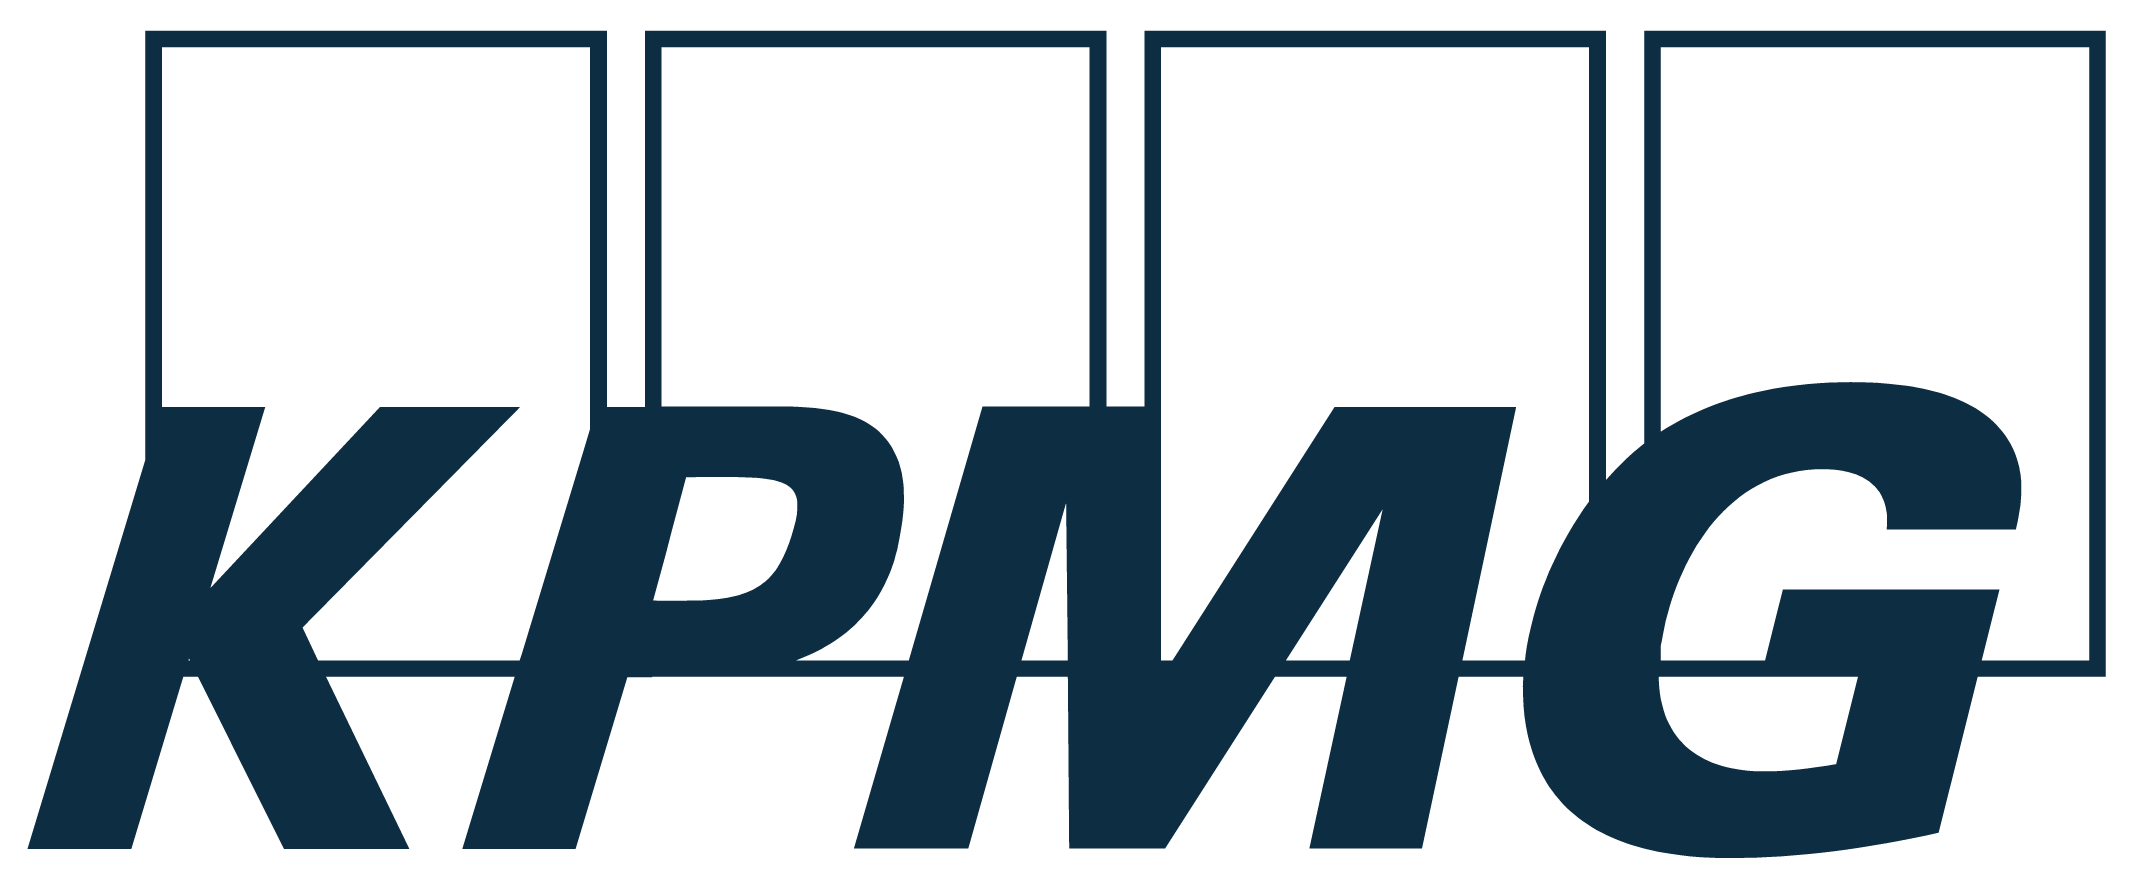 KPMG_logo-01.png